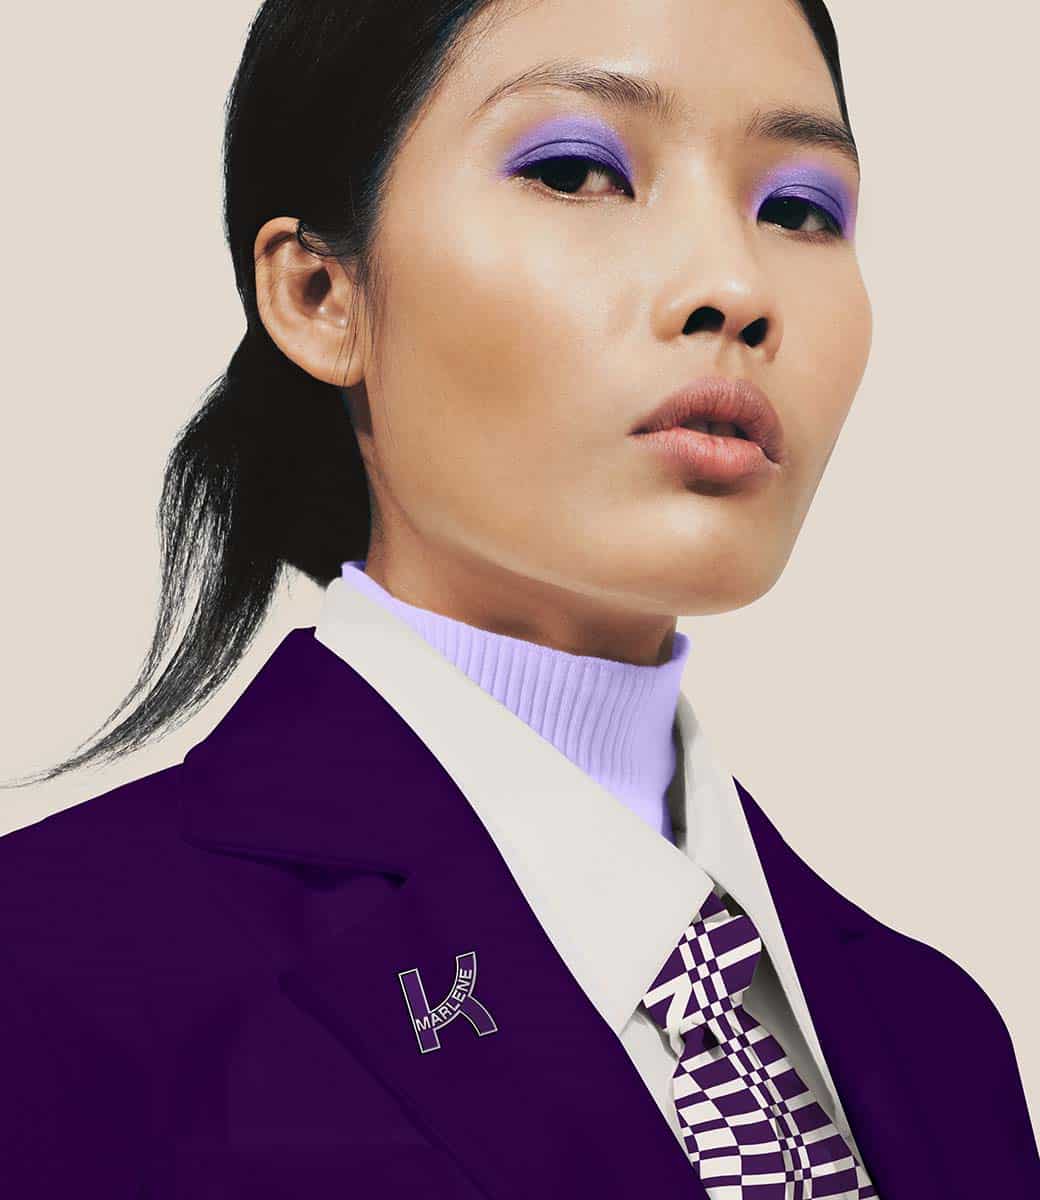 Ein Model blickt direkt i. die Kamera. ihr lilafarbenes makeup passt zur lila uniform mit Kathrein logo